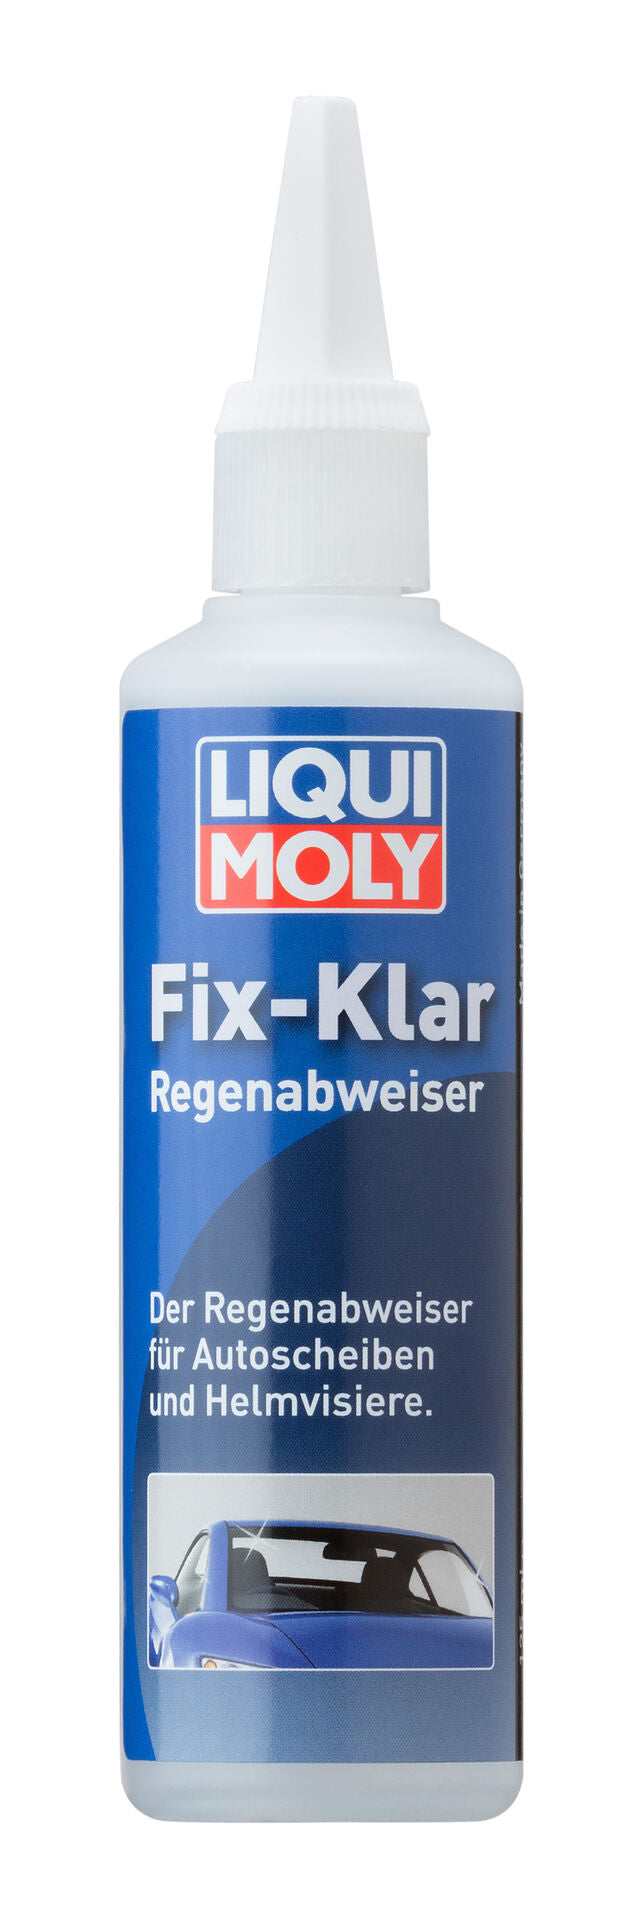 Fix Klar Regenabweiser – EXCB